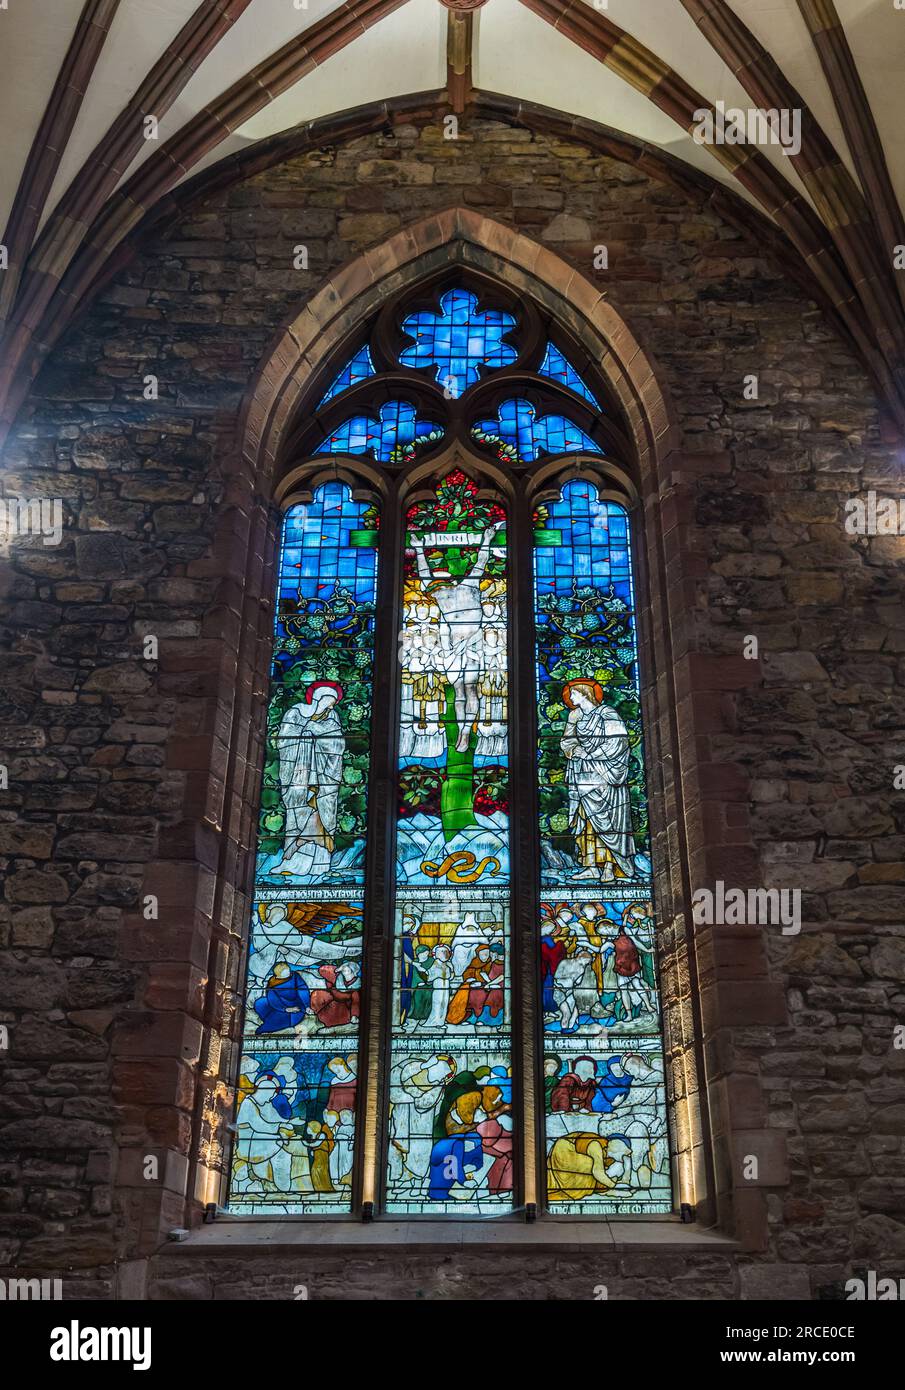 Vitrail avec scène religieuse de Jésus crucifixion, église paroissiale St Mary, Haddington, East Lothian, Écosse, Royaume-Uni Banque D'Images